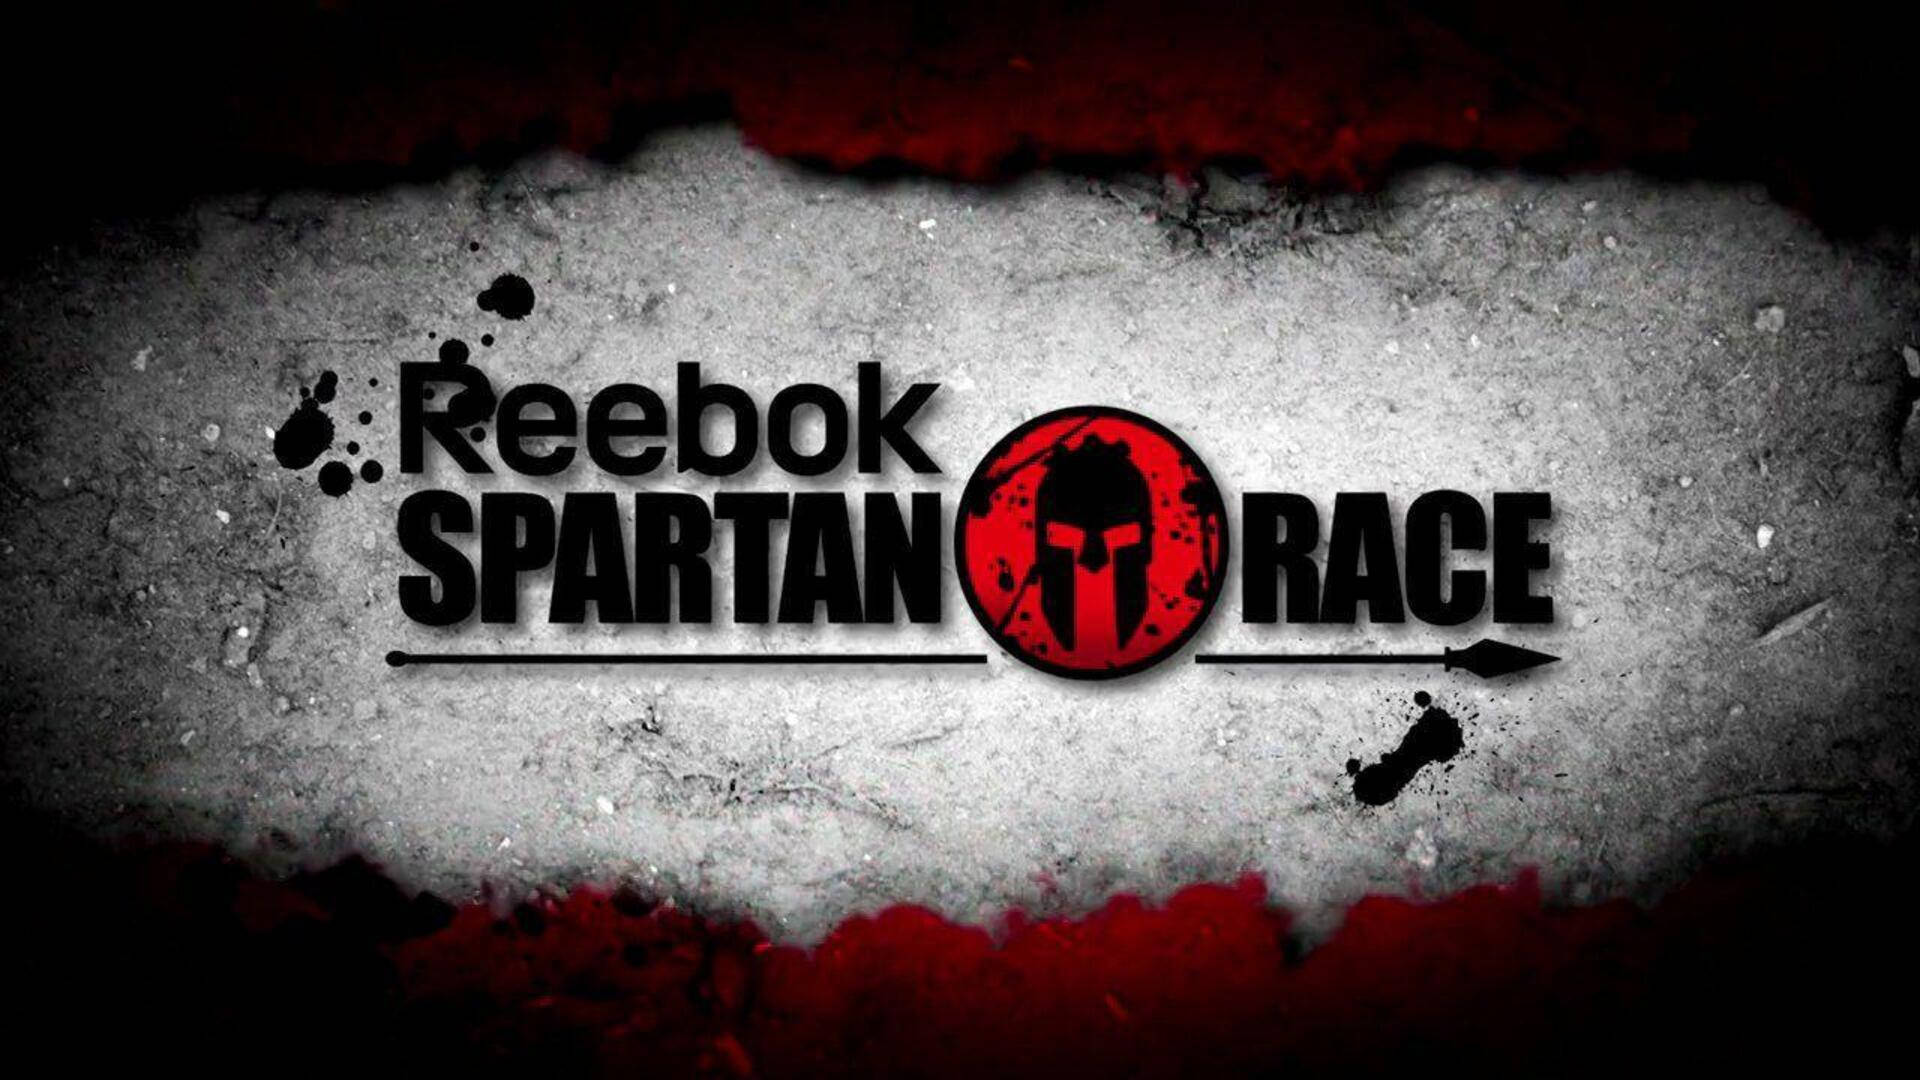 Reebok Spartan Race Design